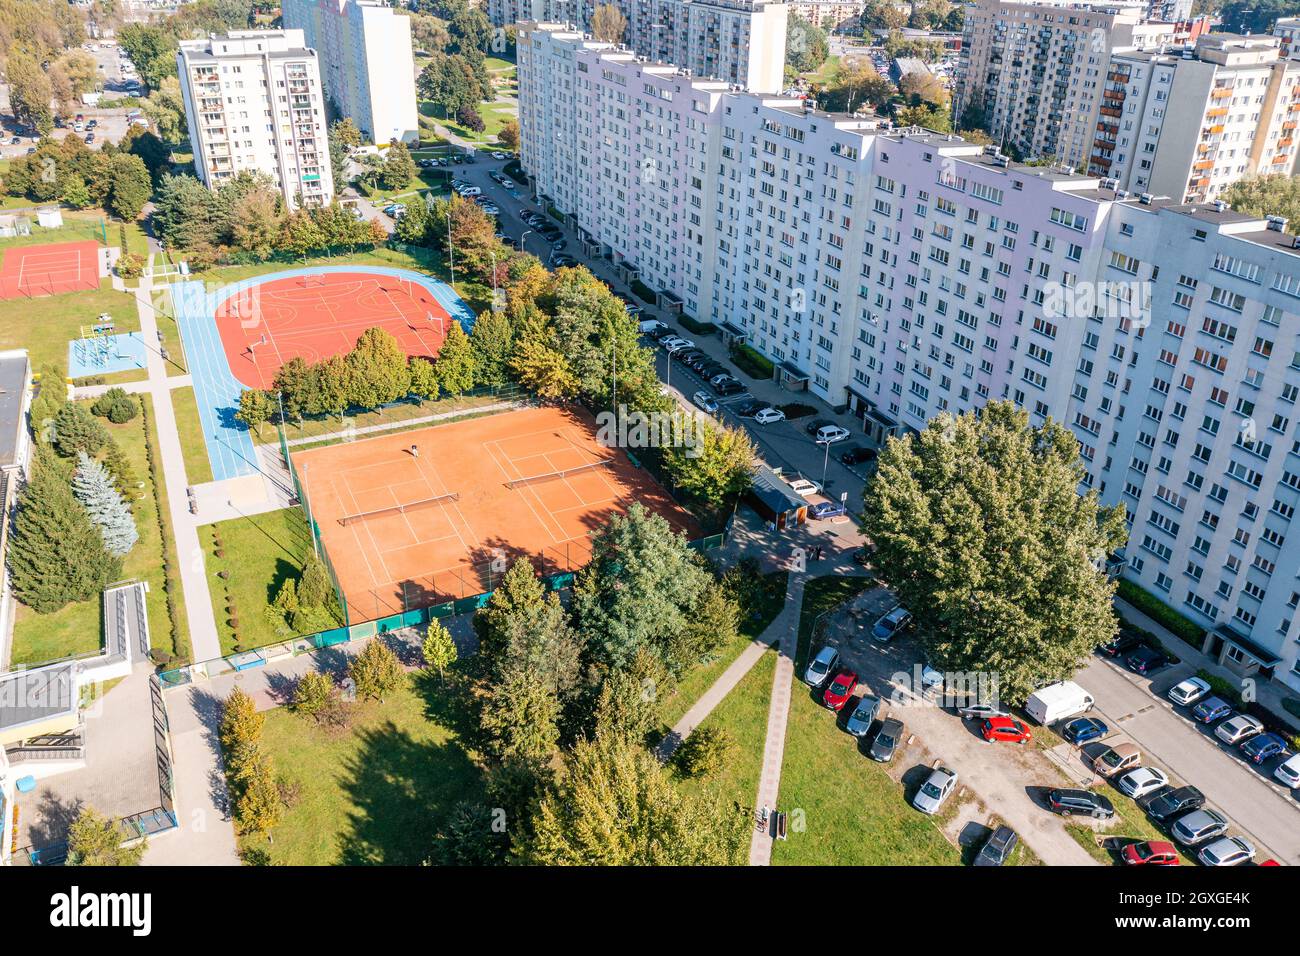 Tennis- und Basketballplatz durch Wohnprojekt, Platz für Bürger zum Abhängen Stockfoto